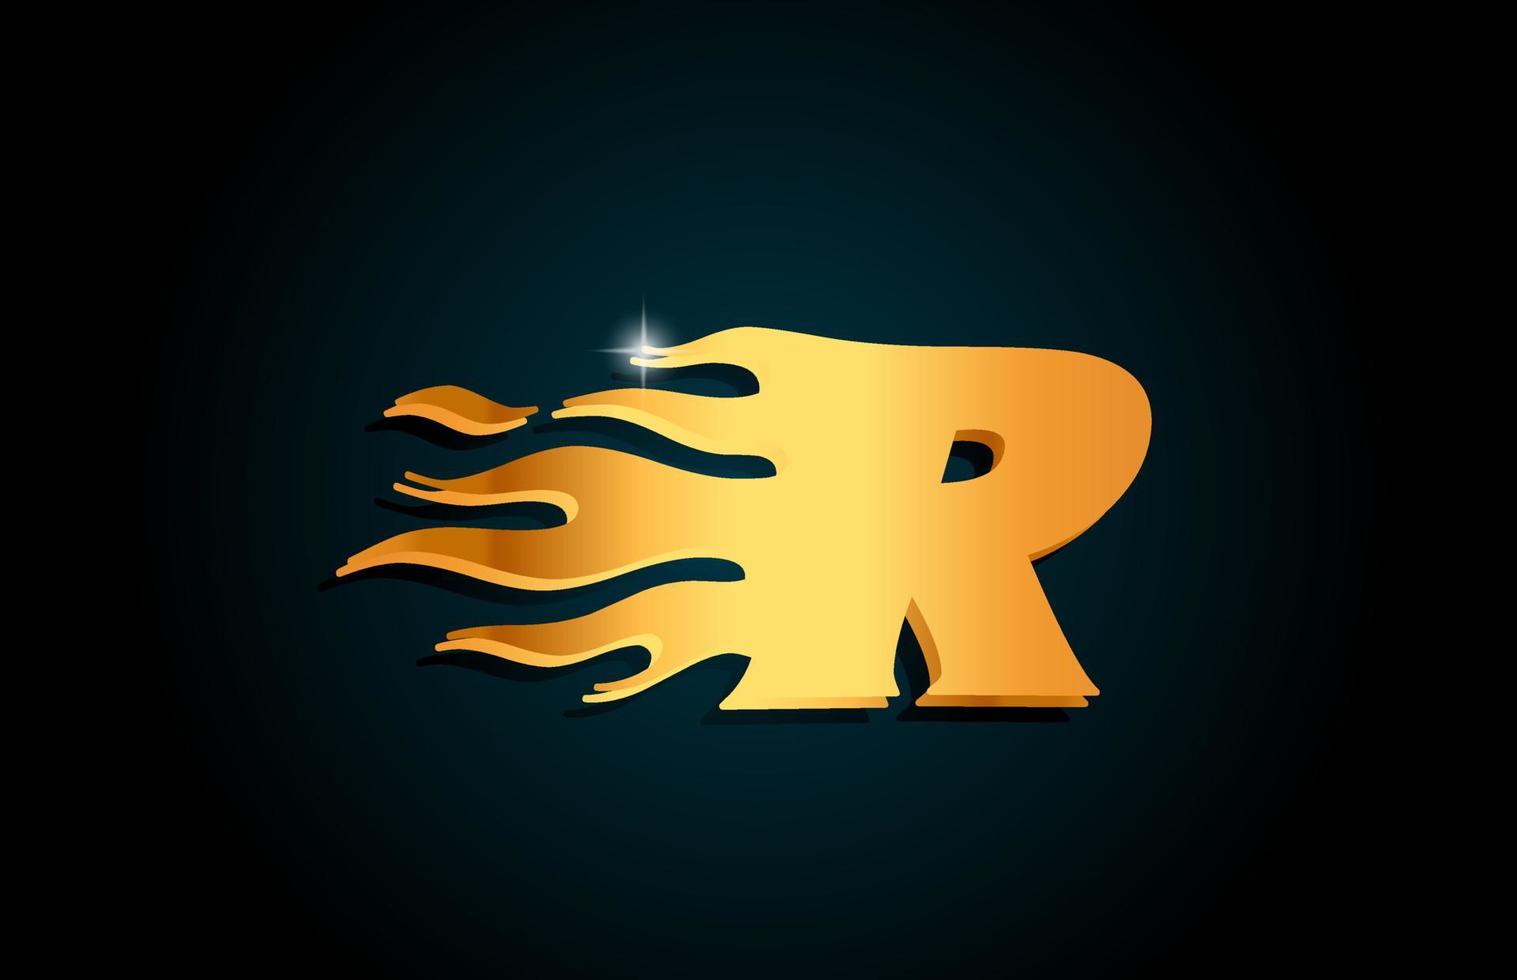 oro r alfabeto lettera icona logo design. modello creativo per affari con fiamme dorate vettore